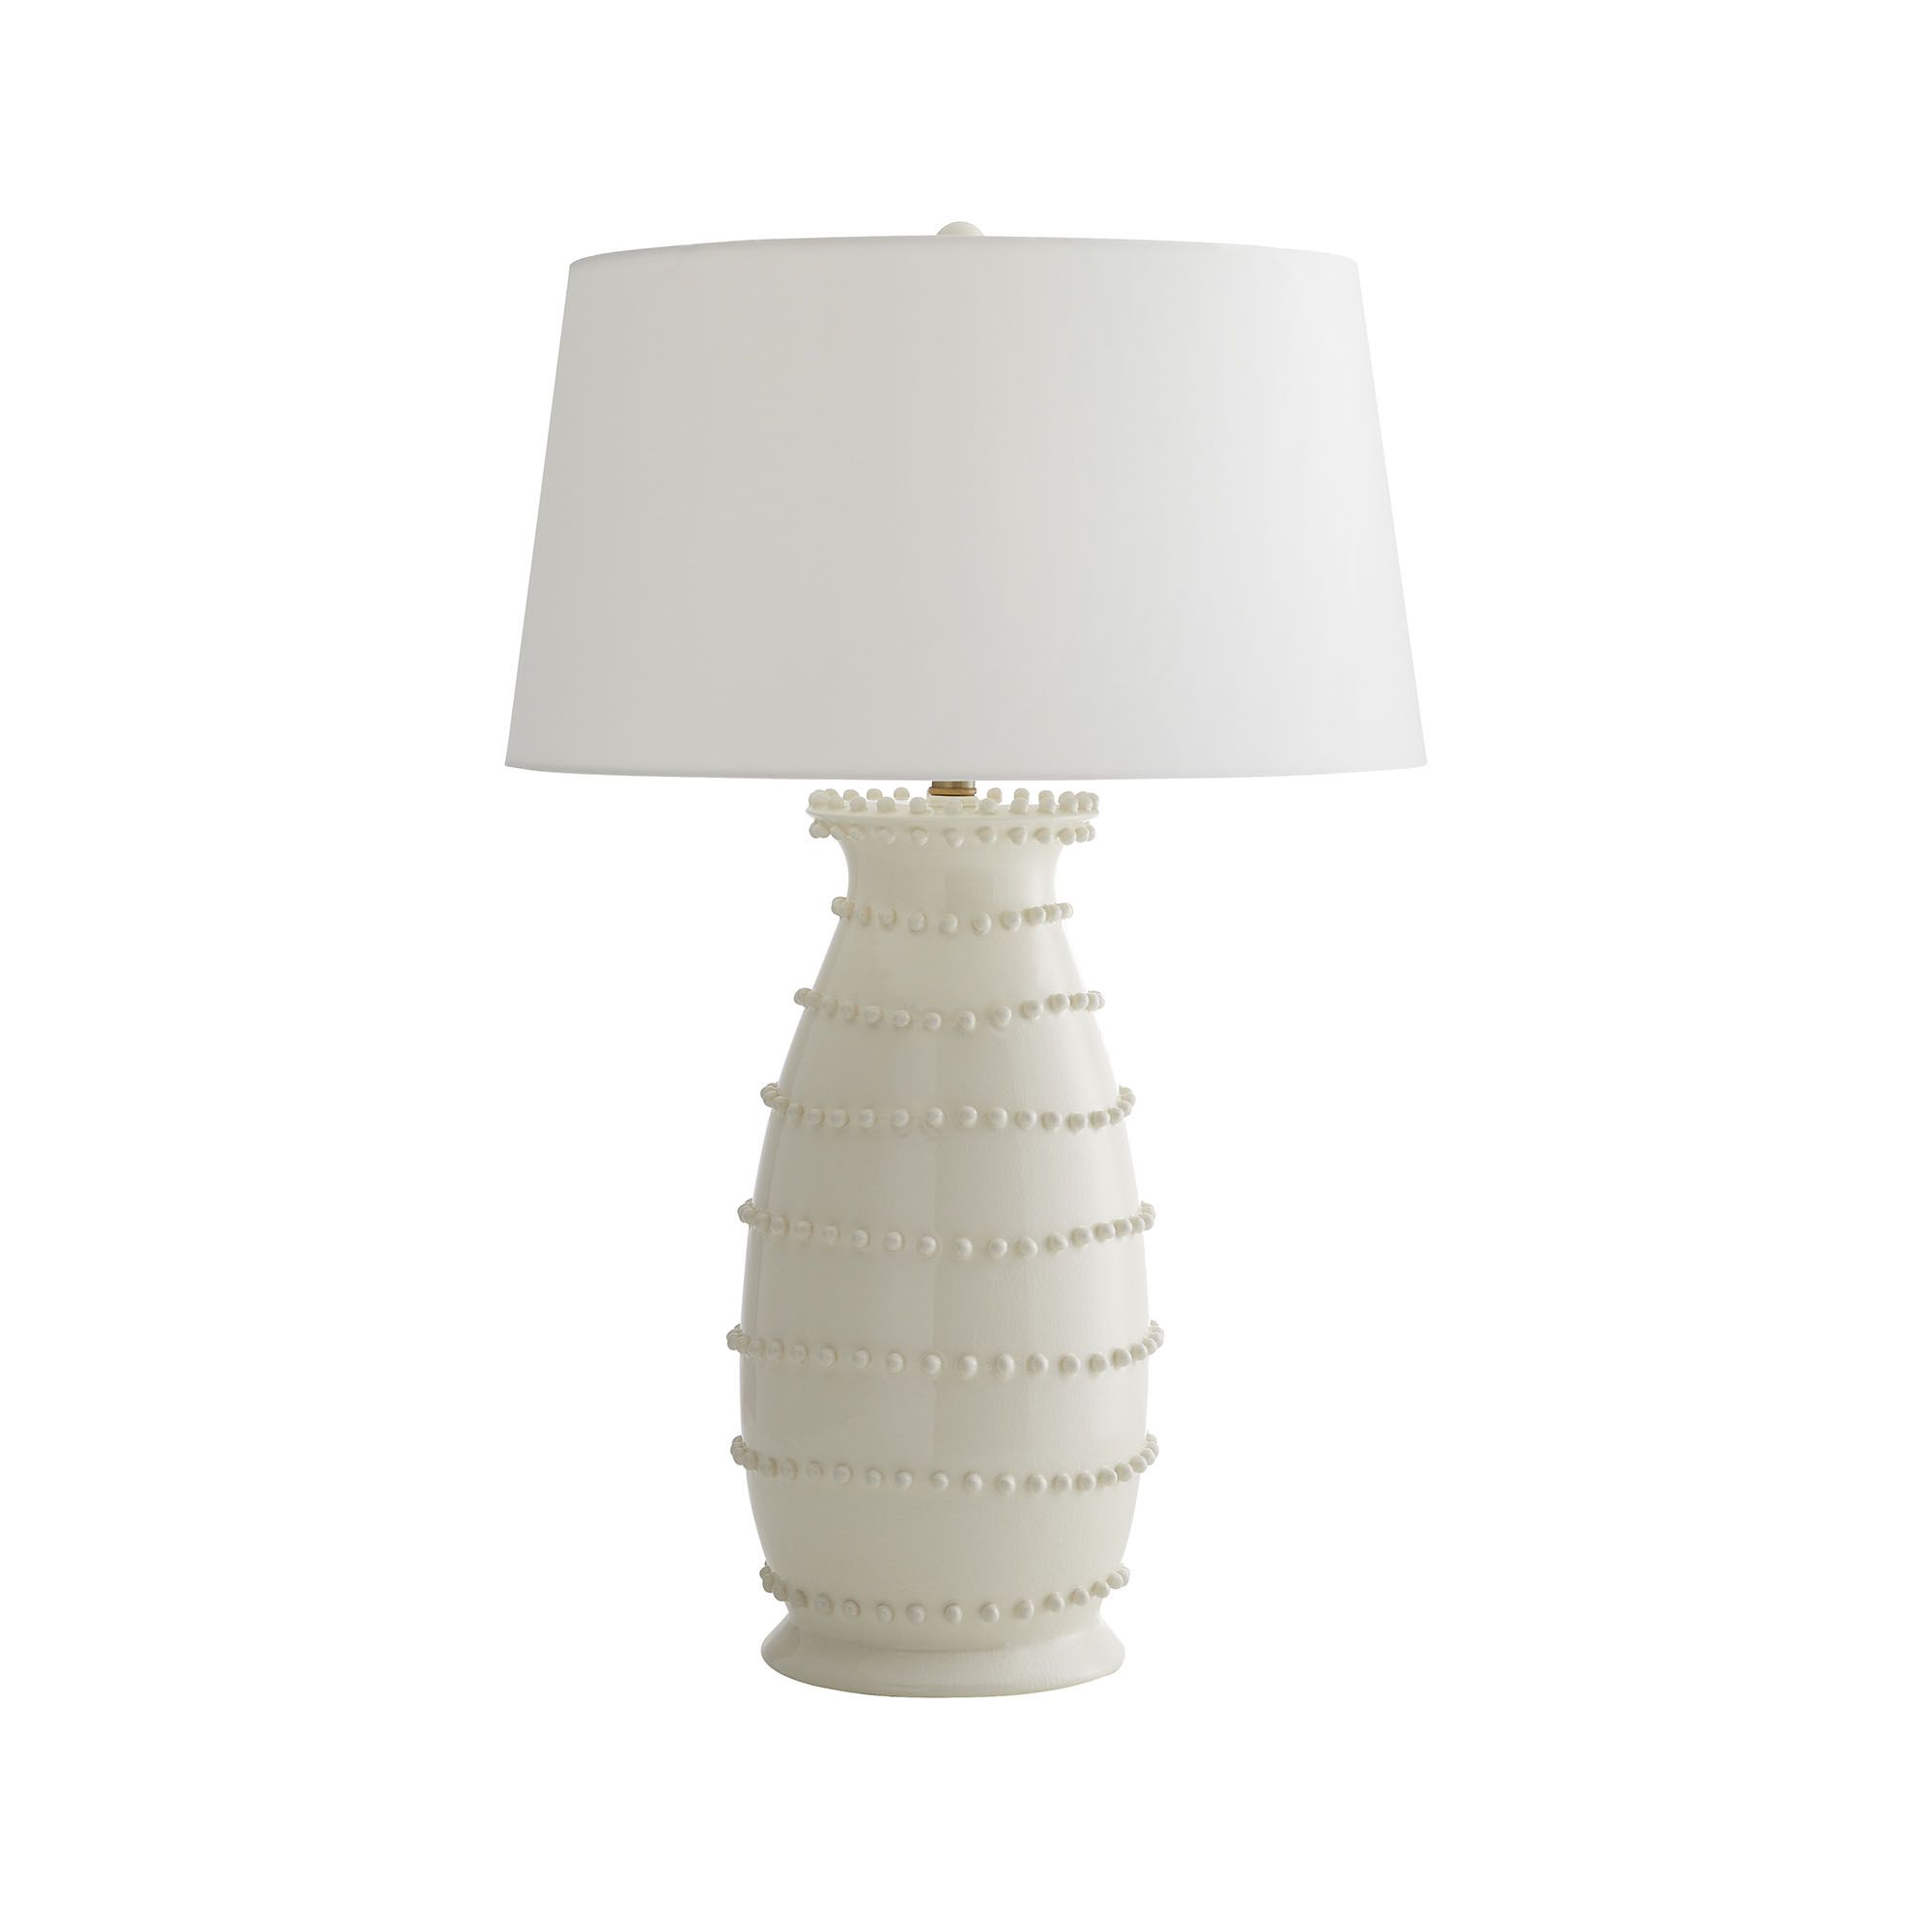 Купить Настольная лампа Spitzy Lamp в интернет-магазине roooms.ru